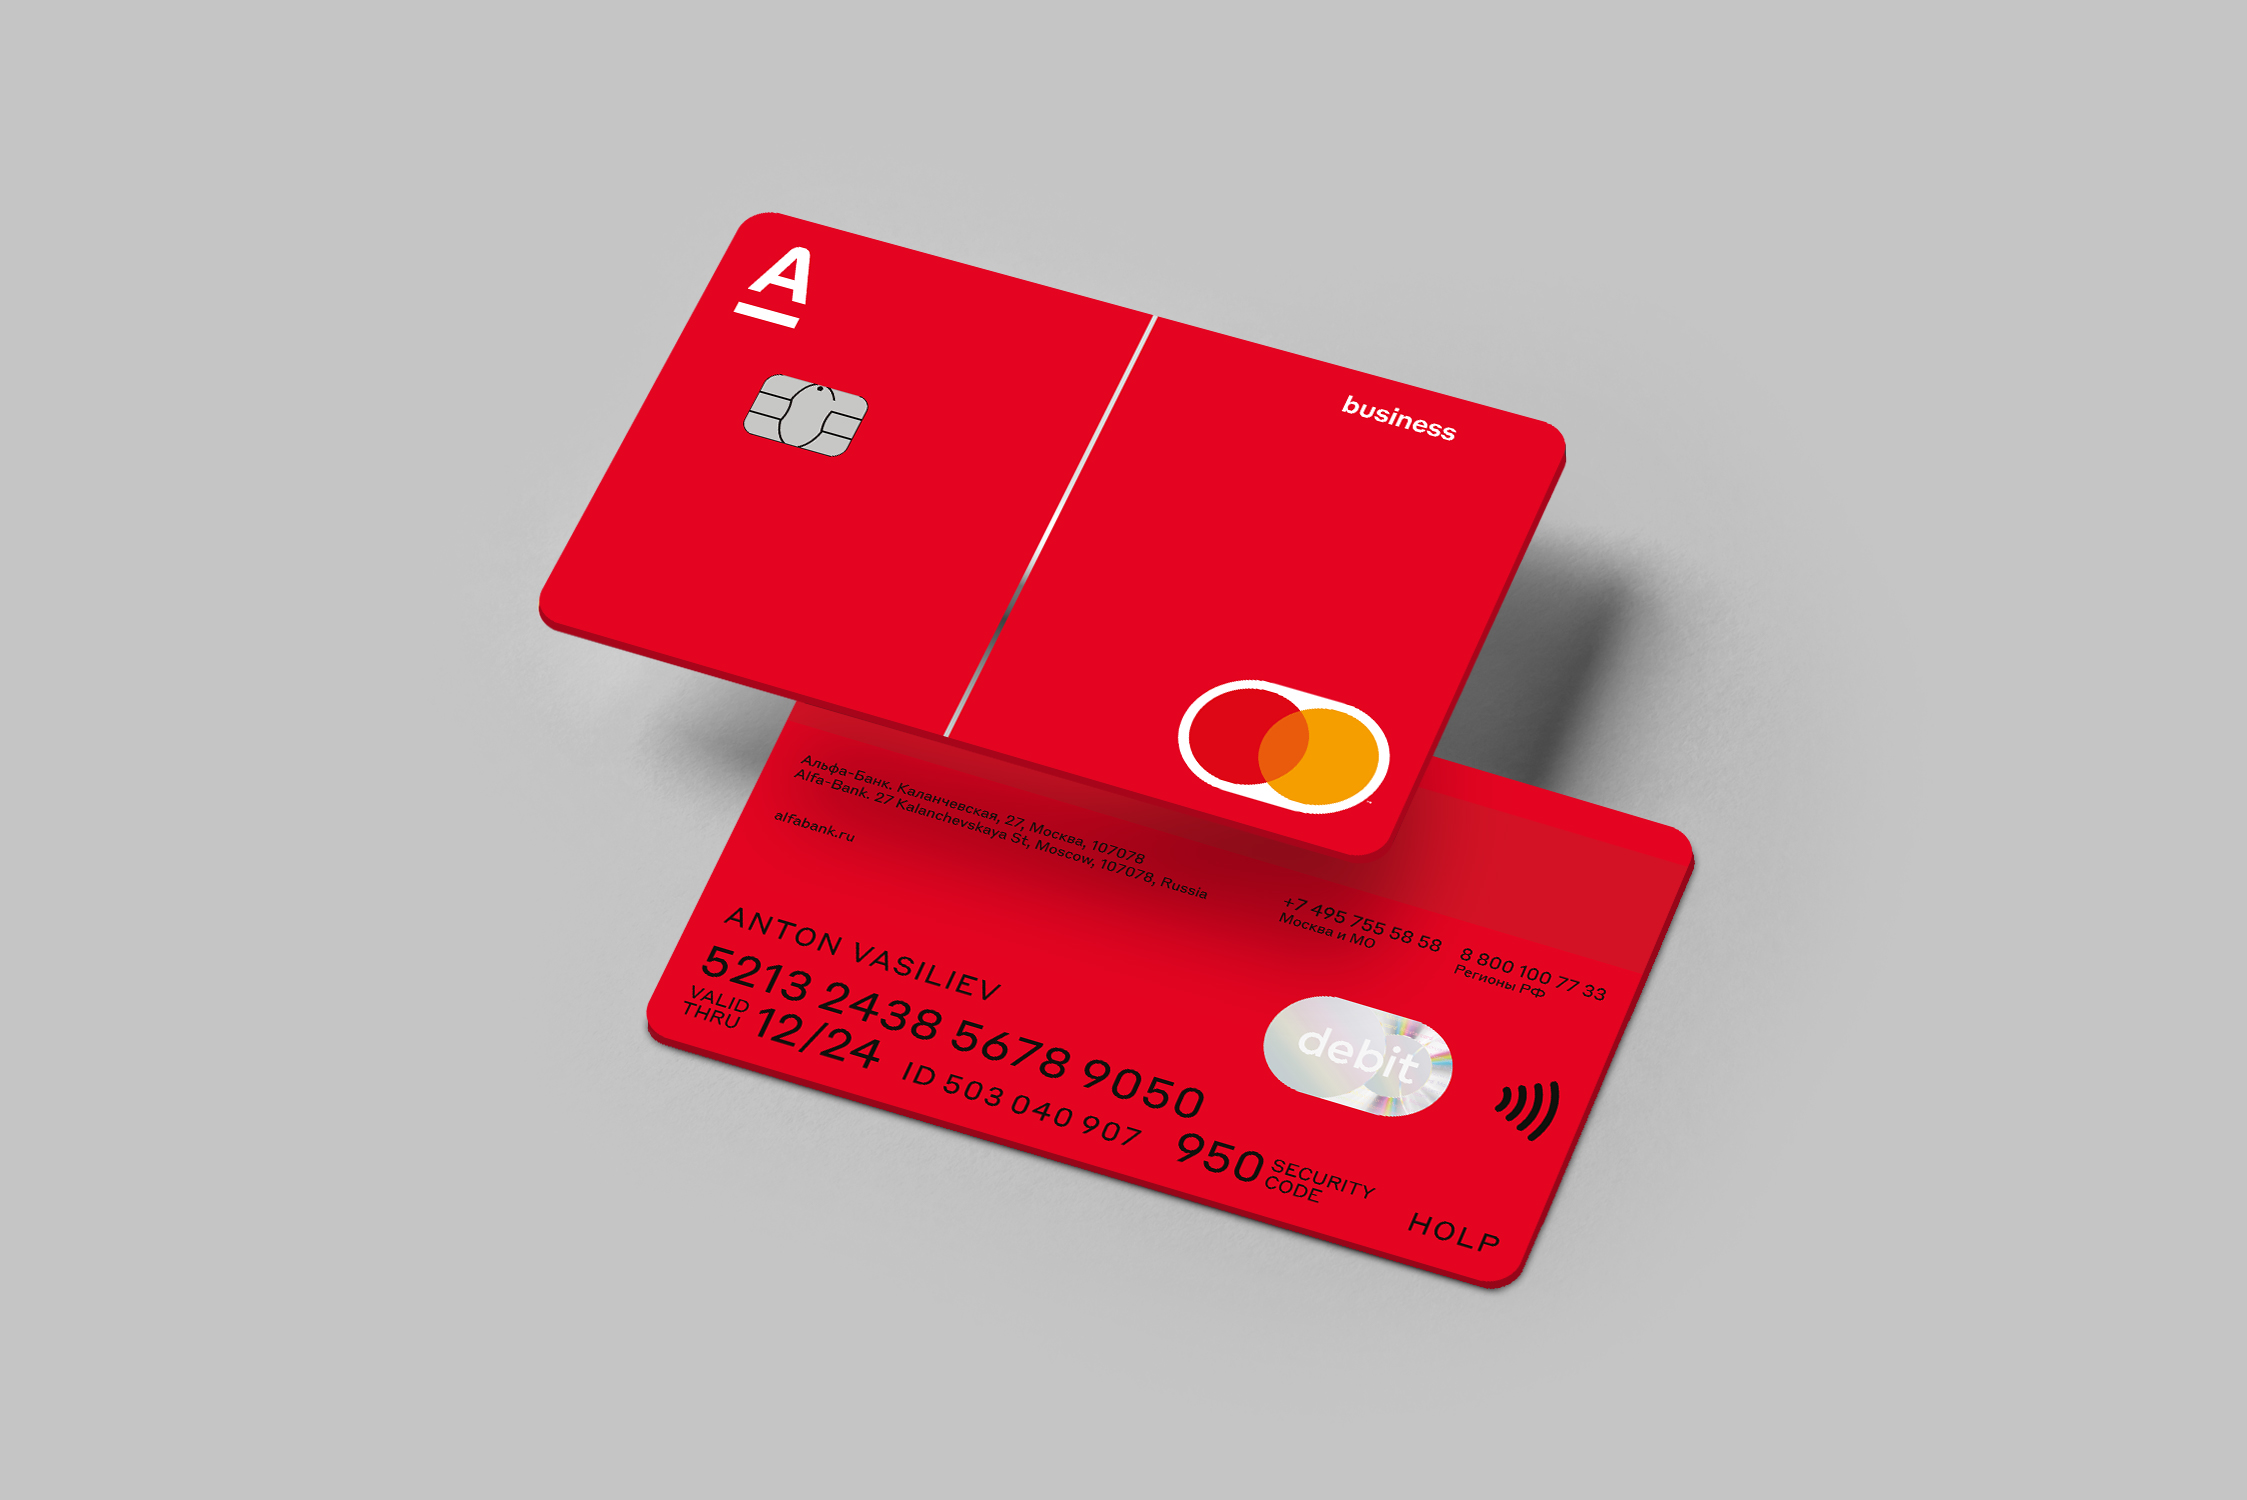 Кредитка 1. Альфа банк карта новая. Карточка Альфа банка. Красная банковская карта. Альфа банк бизнес карта.